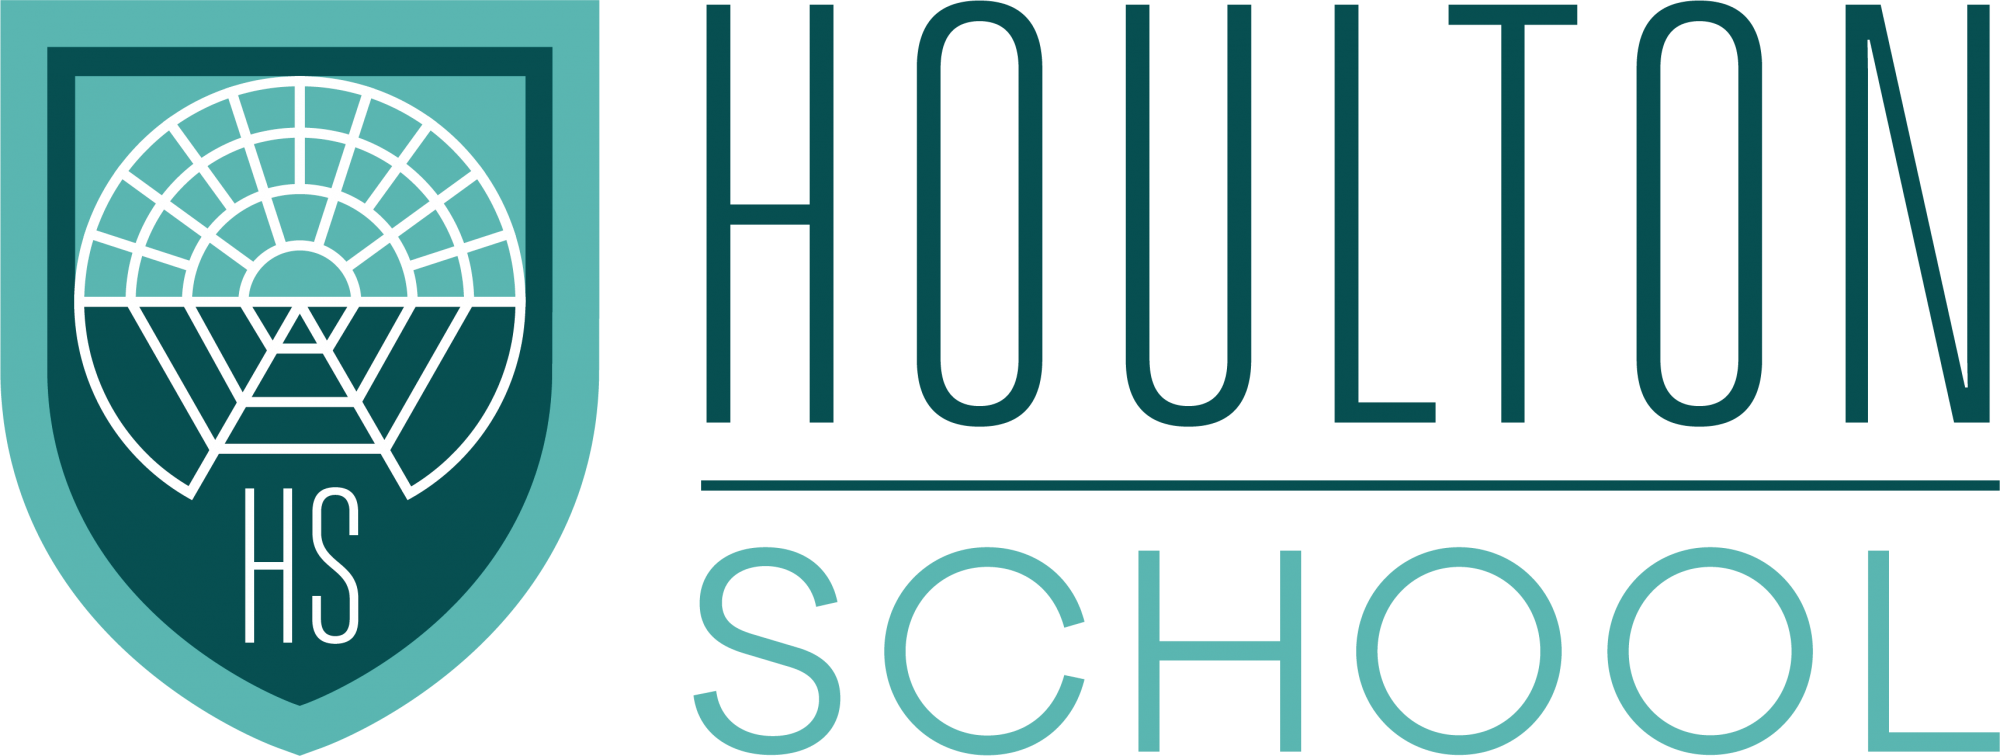 Houlton School